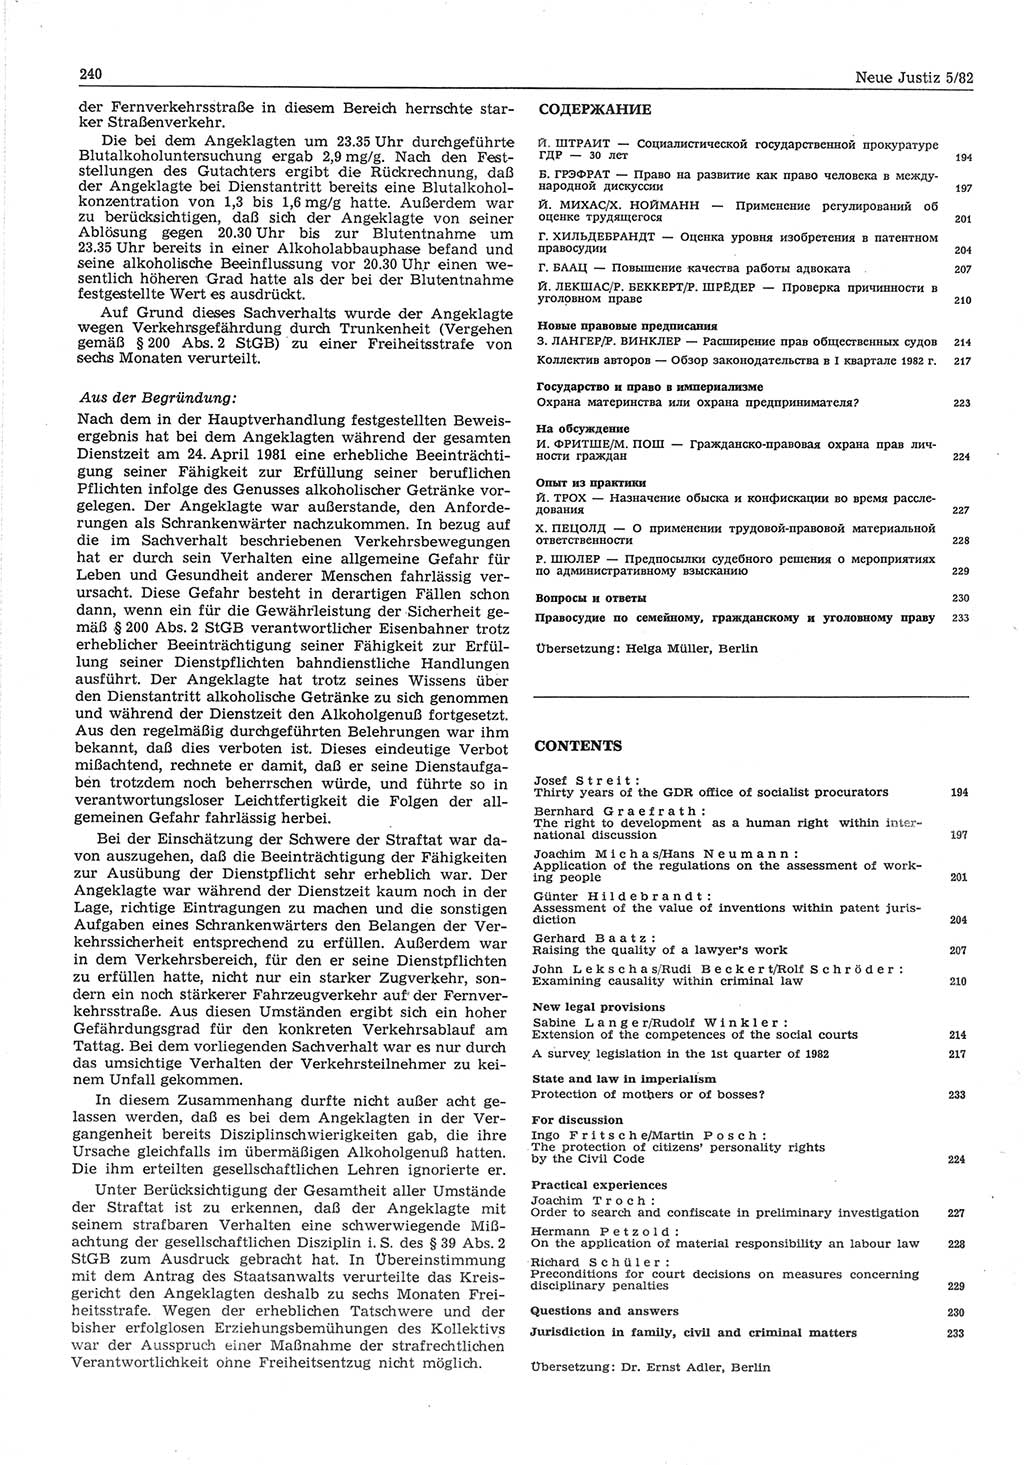 Neue Justiz (NJ), Zeitschrift für sozialistisches Recht und Gesetzlichkeit [Deutsche Demokratische Republik (DDR)], 36. Jahrgang 1982, Seite 240 (NJ DDR 1982, S. 240)